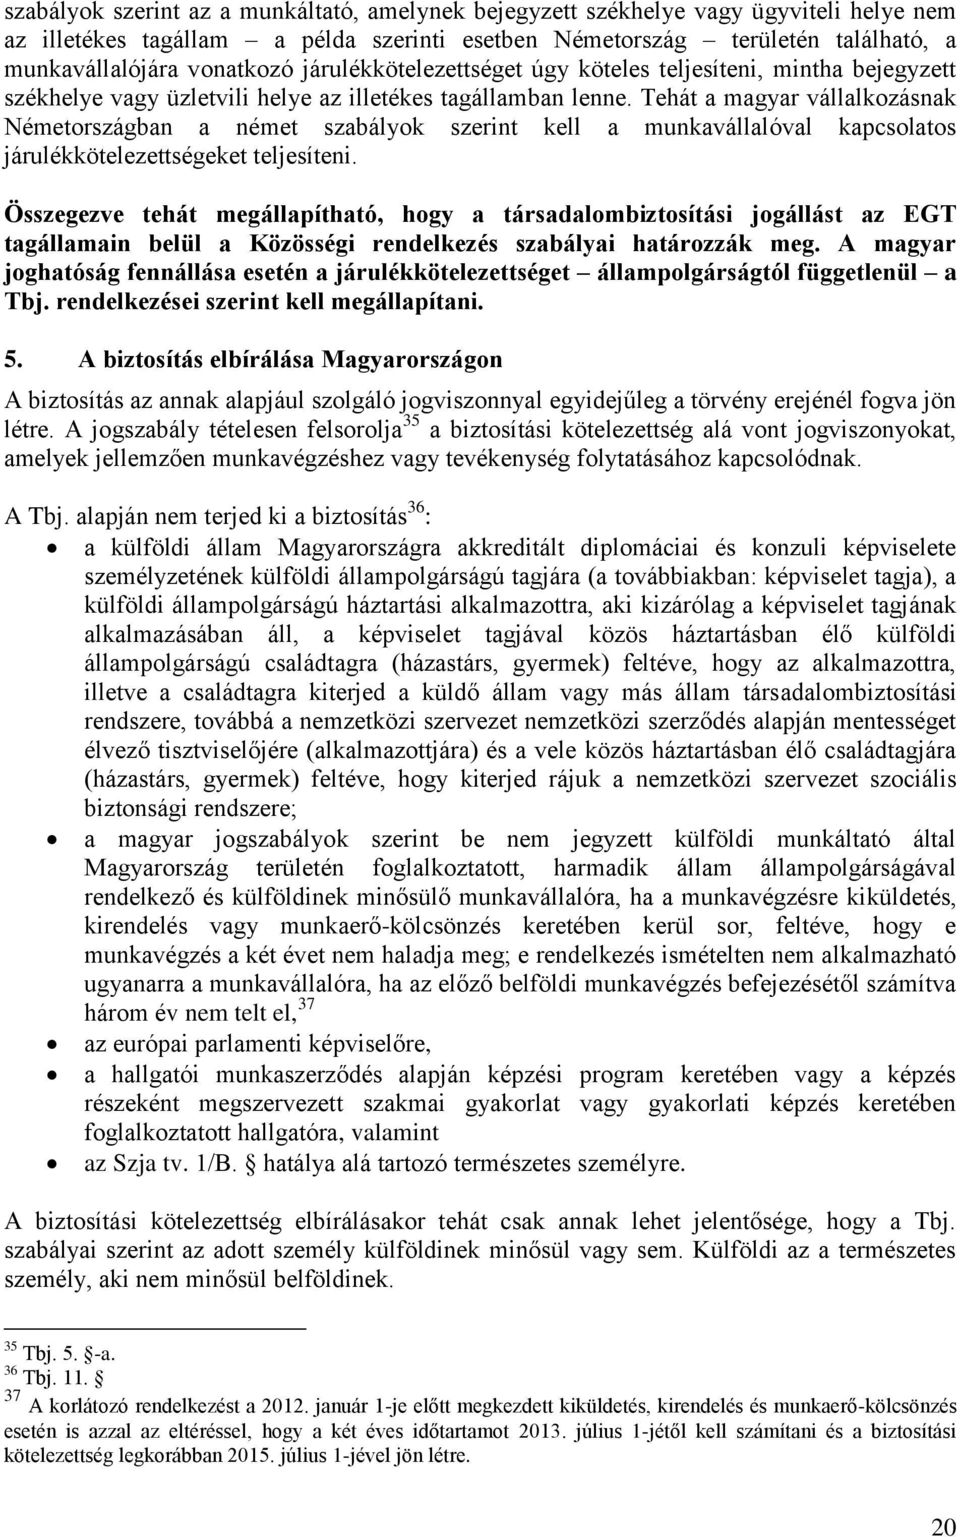 Tehát a magyar vállalkozásnak Németországban a német szabályok szerint kell a munkavállalóval kapcsolatos járulékkötelezettségeket teljesíteni.